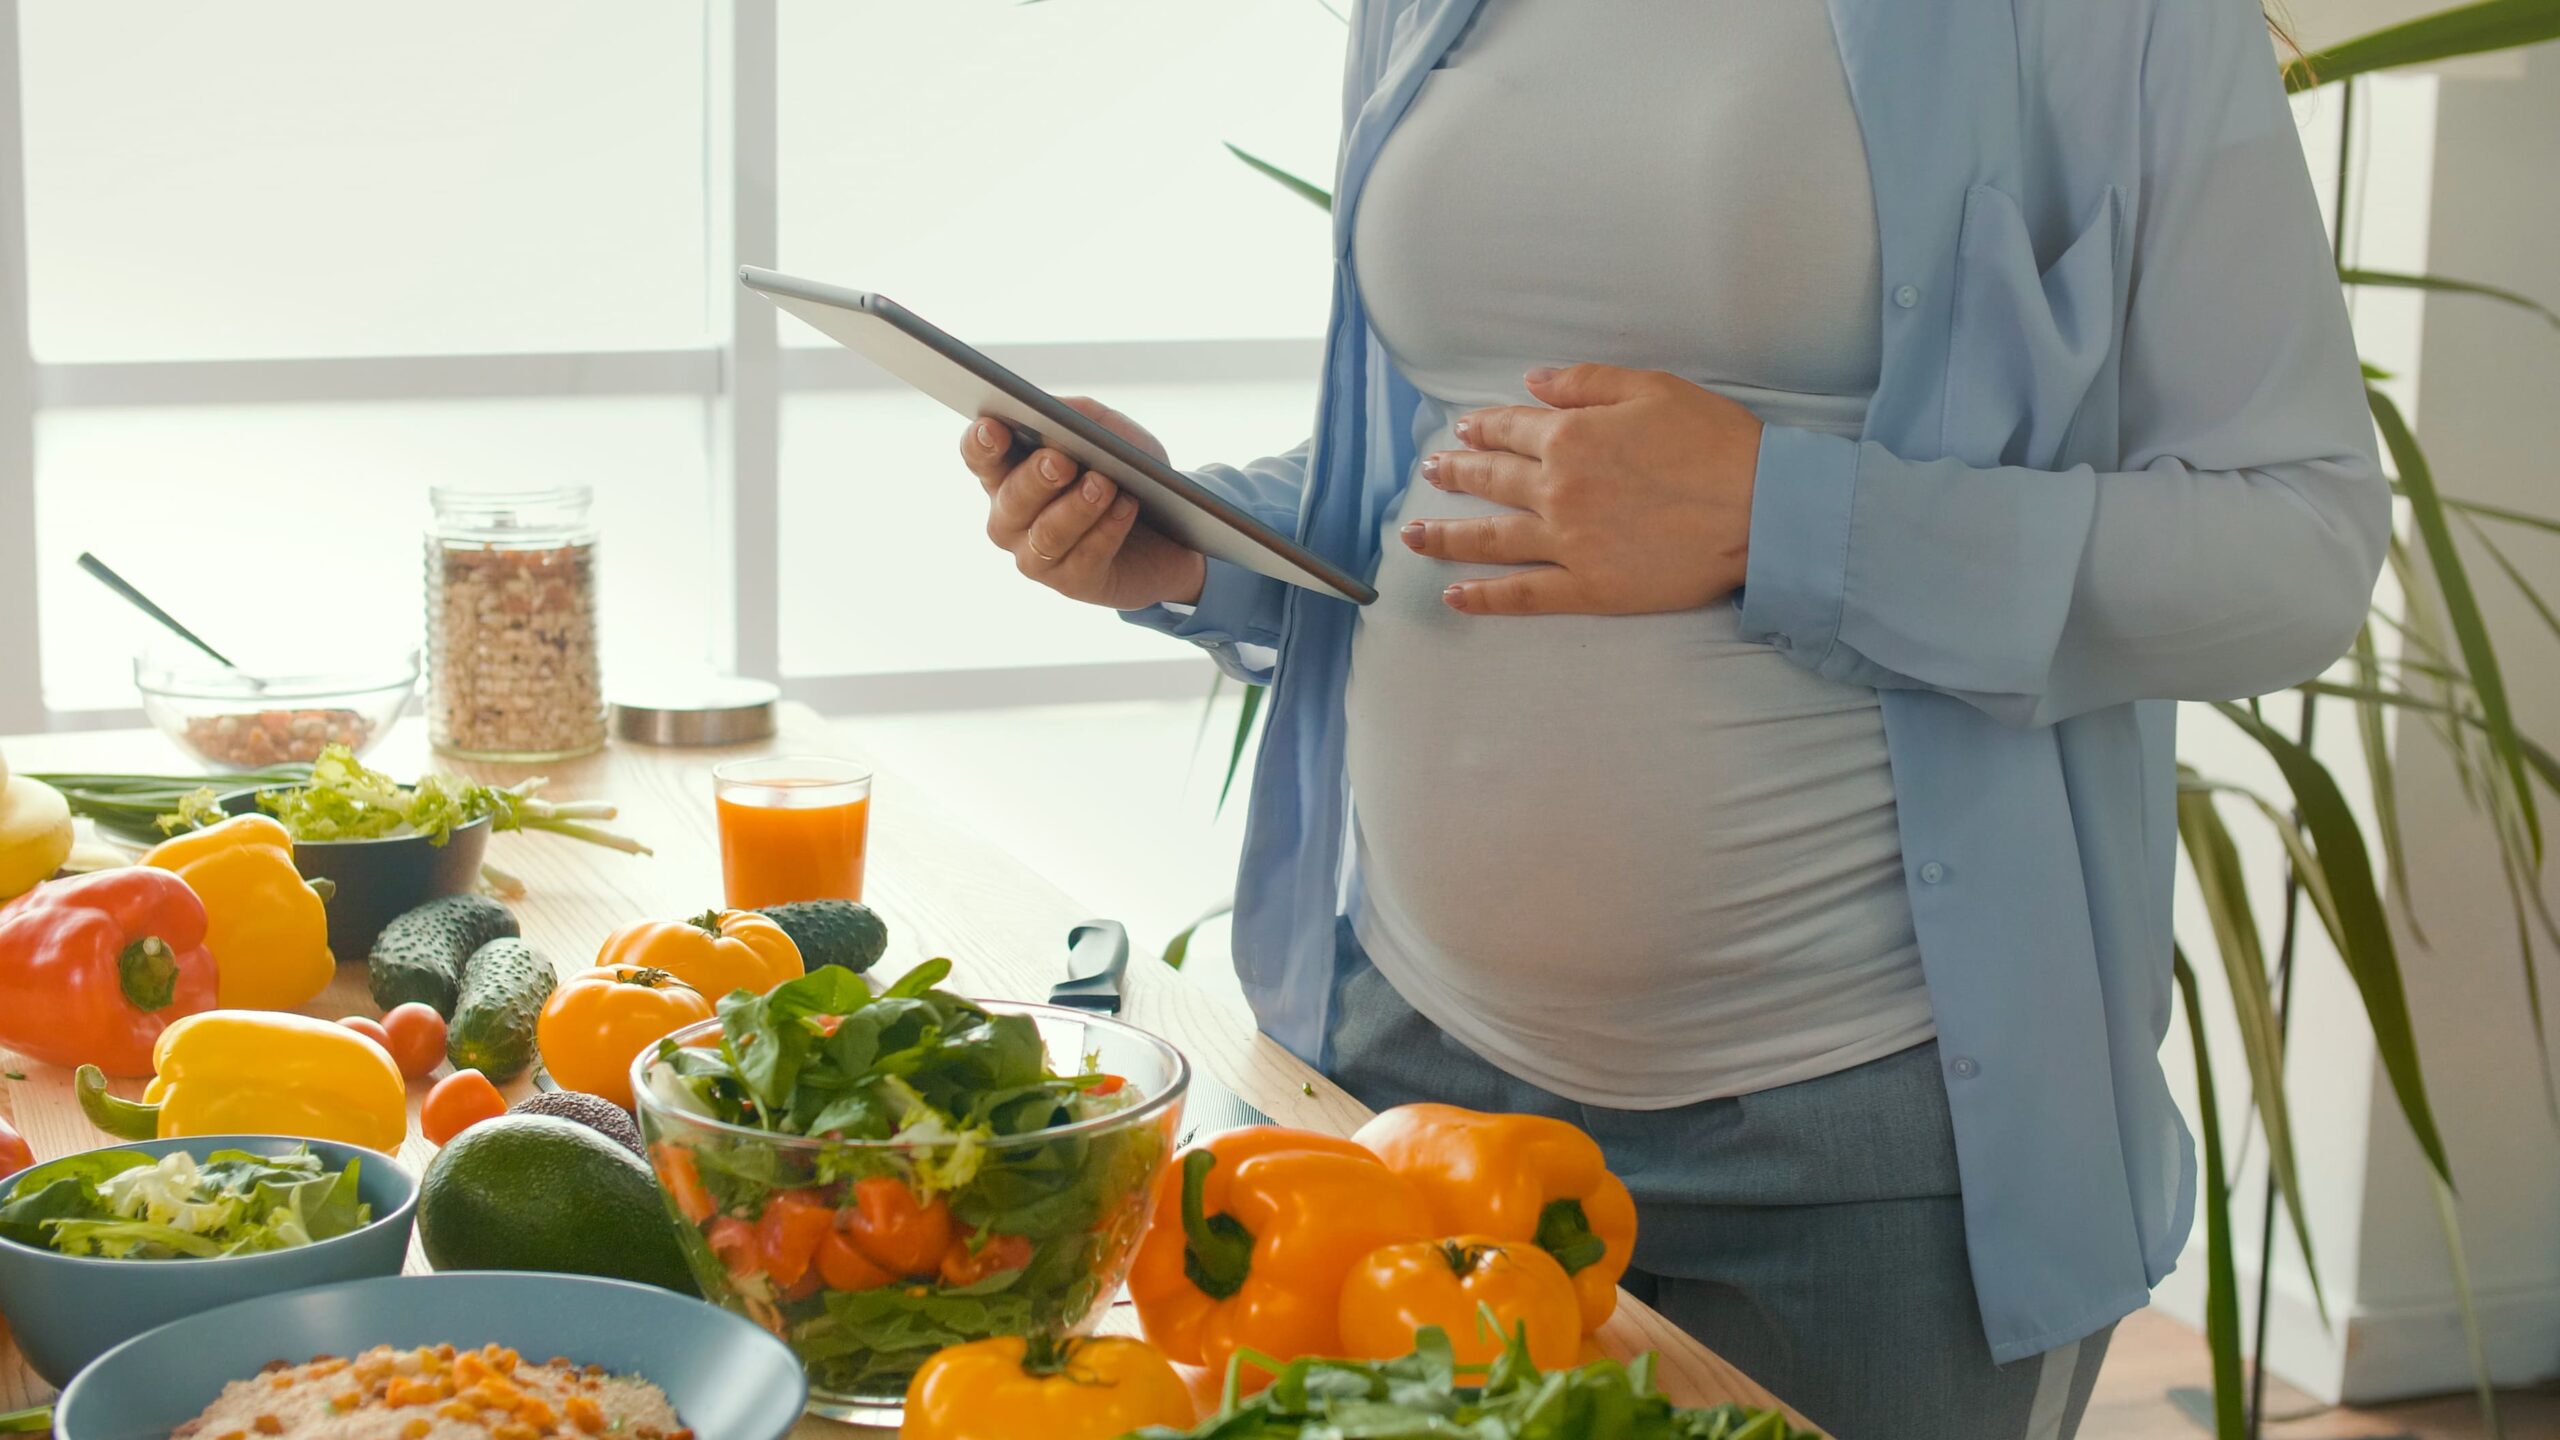 Nutrição e Fertilidade: dicas para quem está iniciando um tratamento